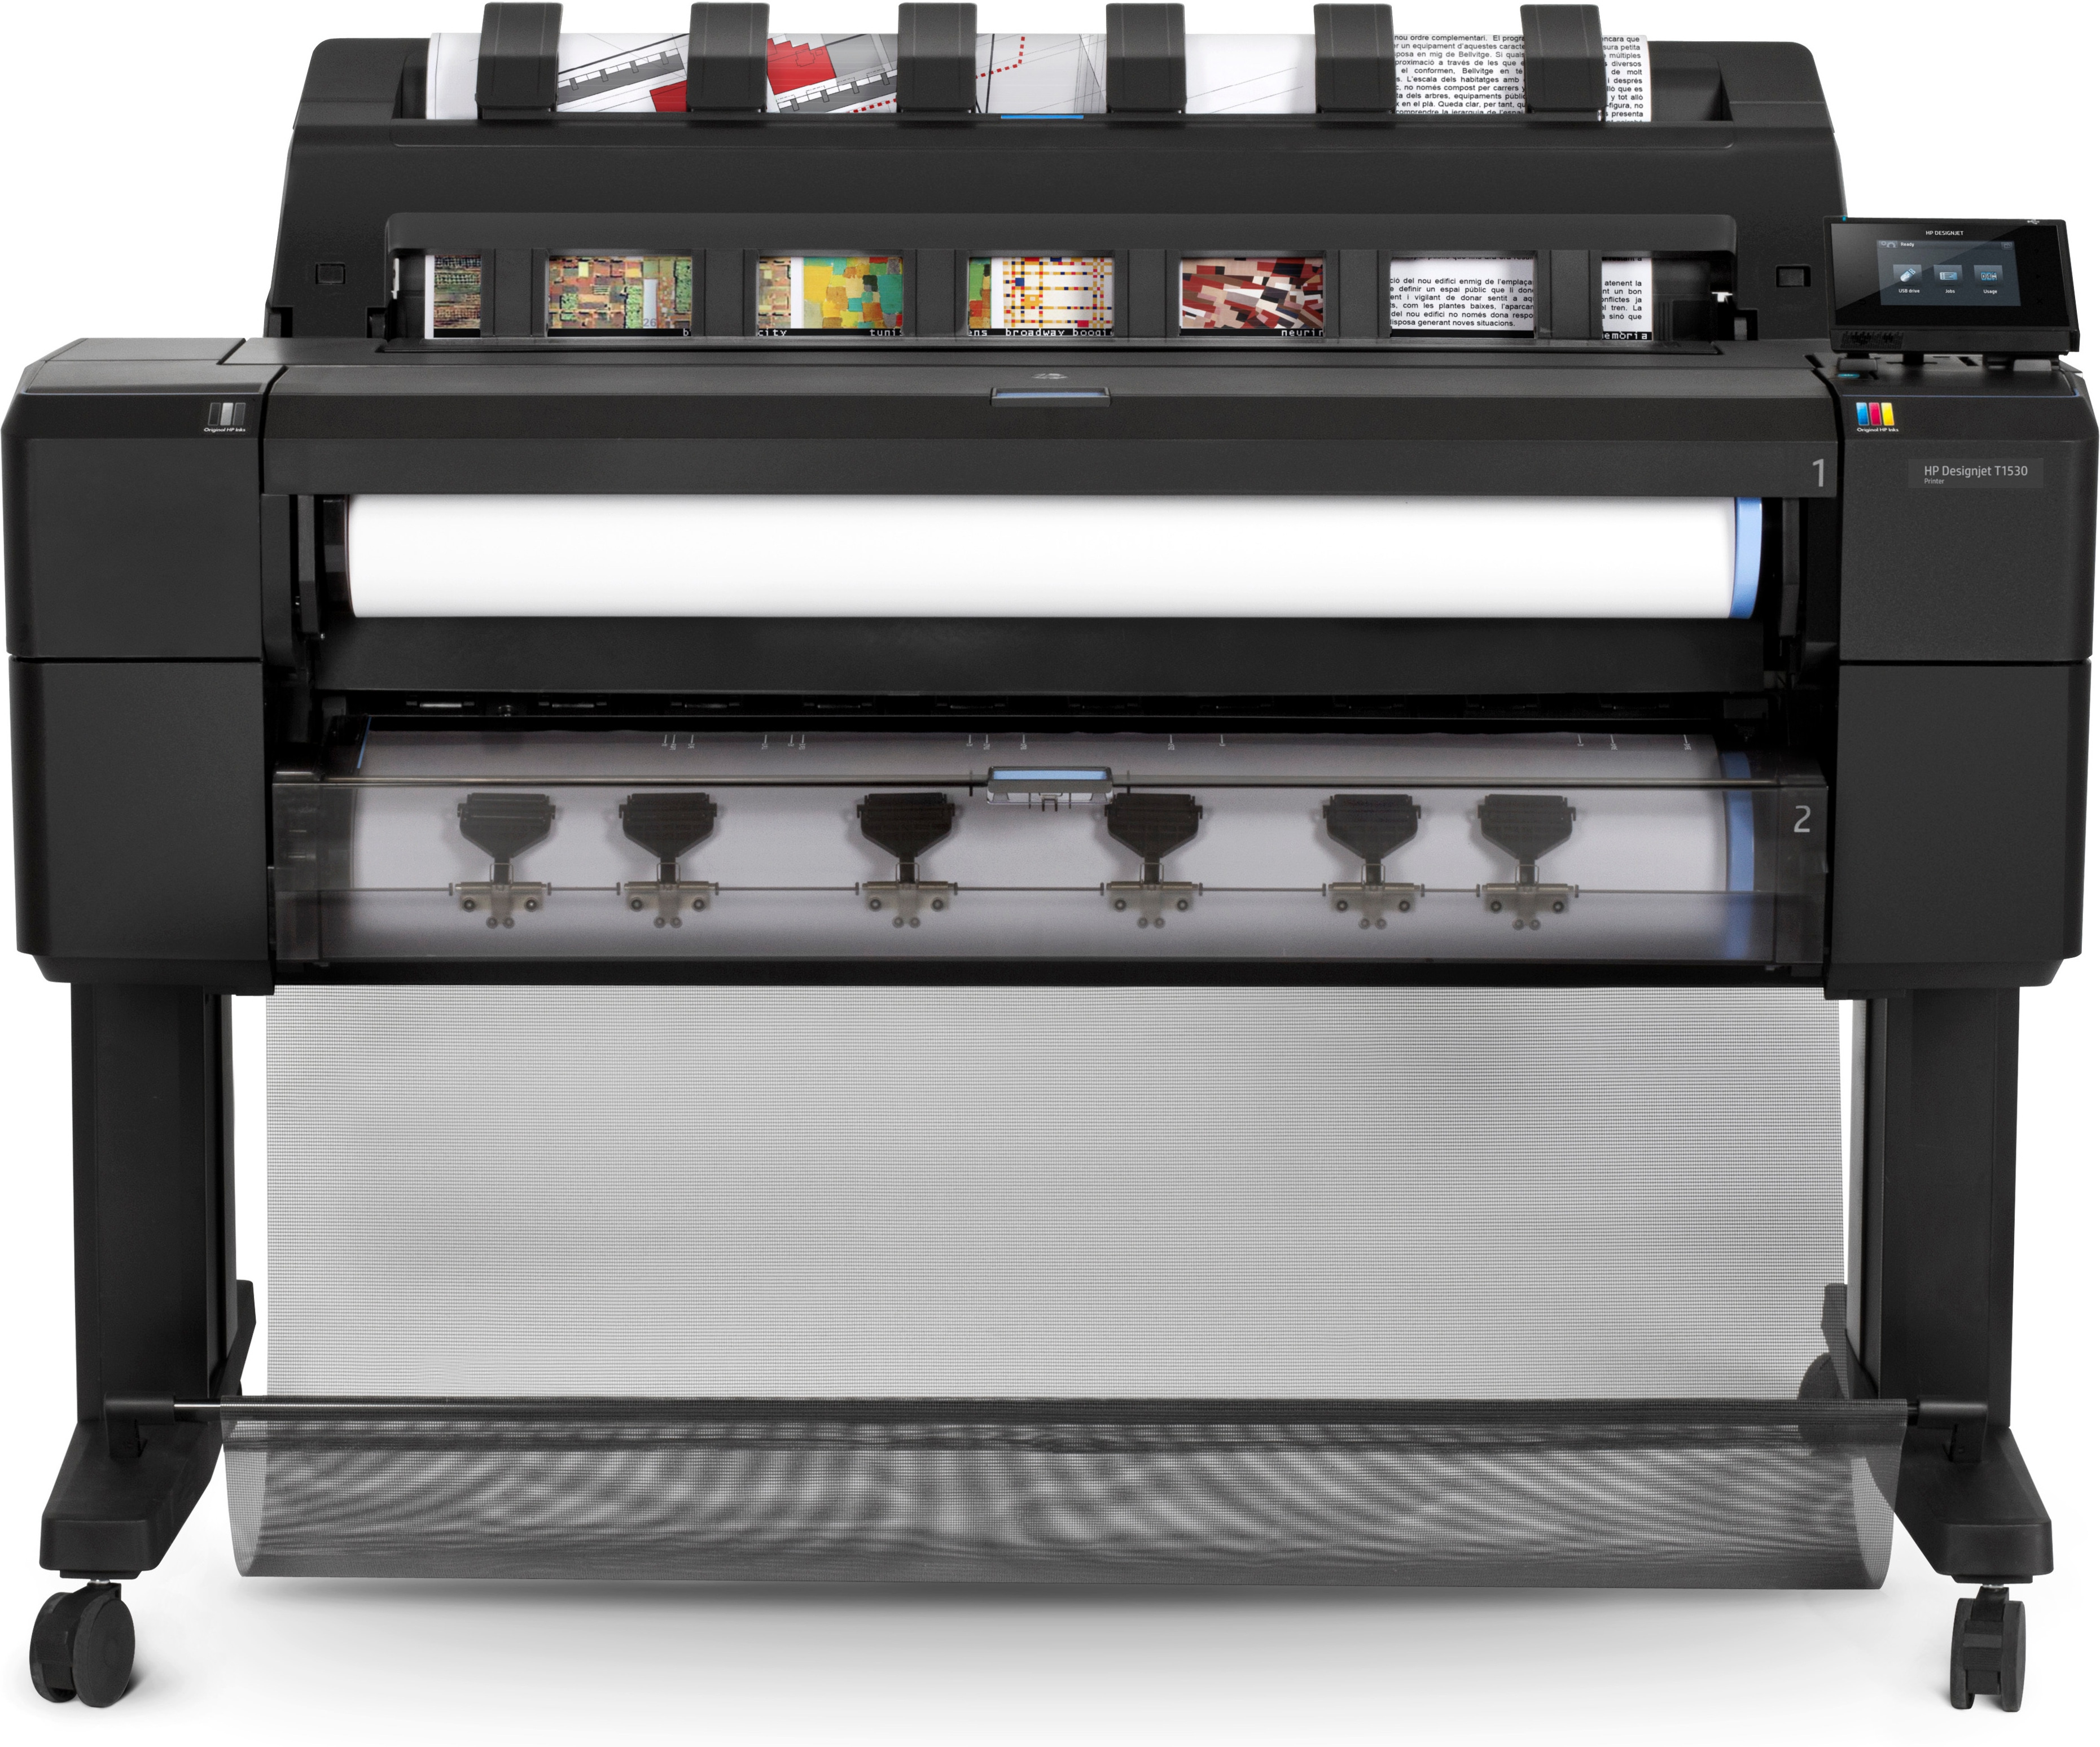 HP Designjet Impresora PostScript de 36' T1530 storformatskrivare Termisk bläckstråle Färg 2400 x 1200 DPI A0 (841 x 1189 mm) Nätverksansluten (Ethernet)